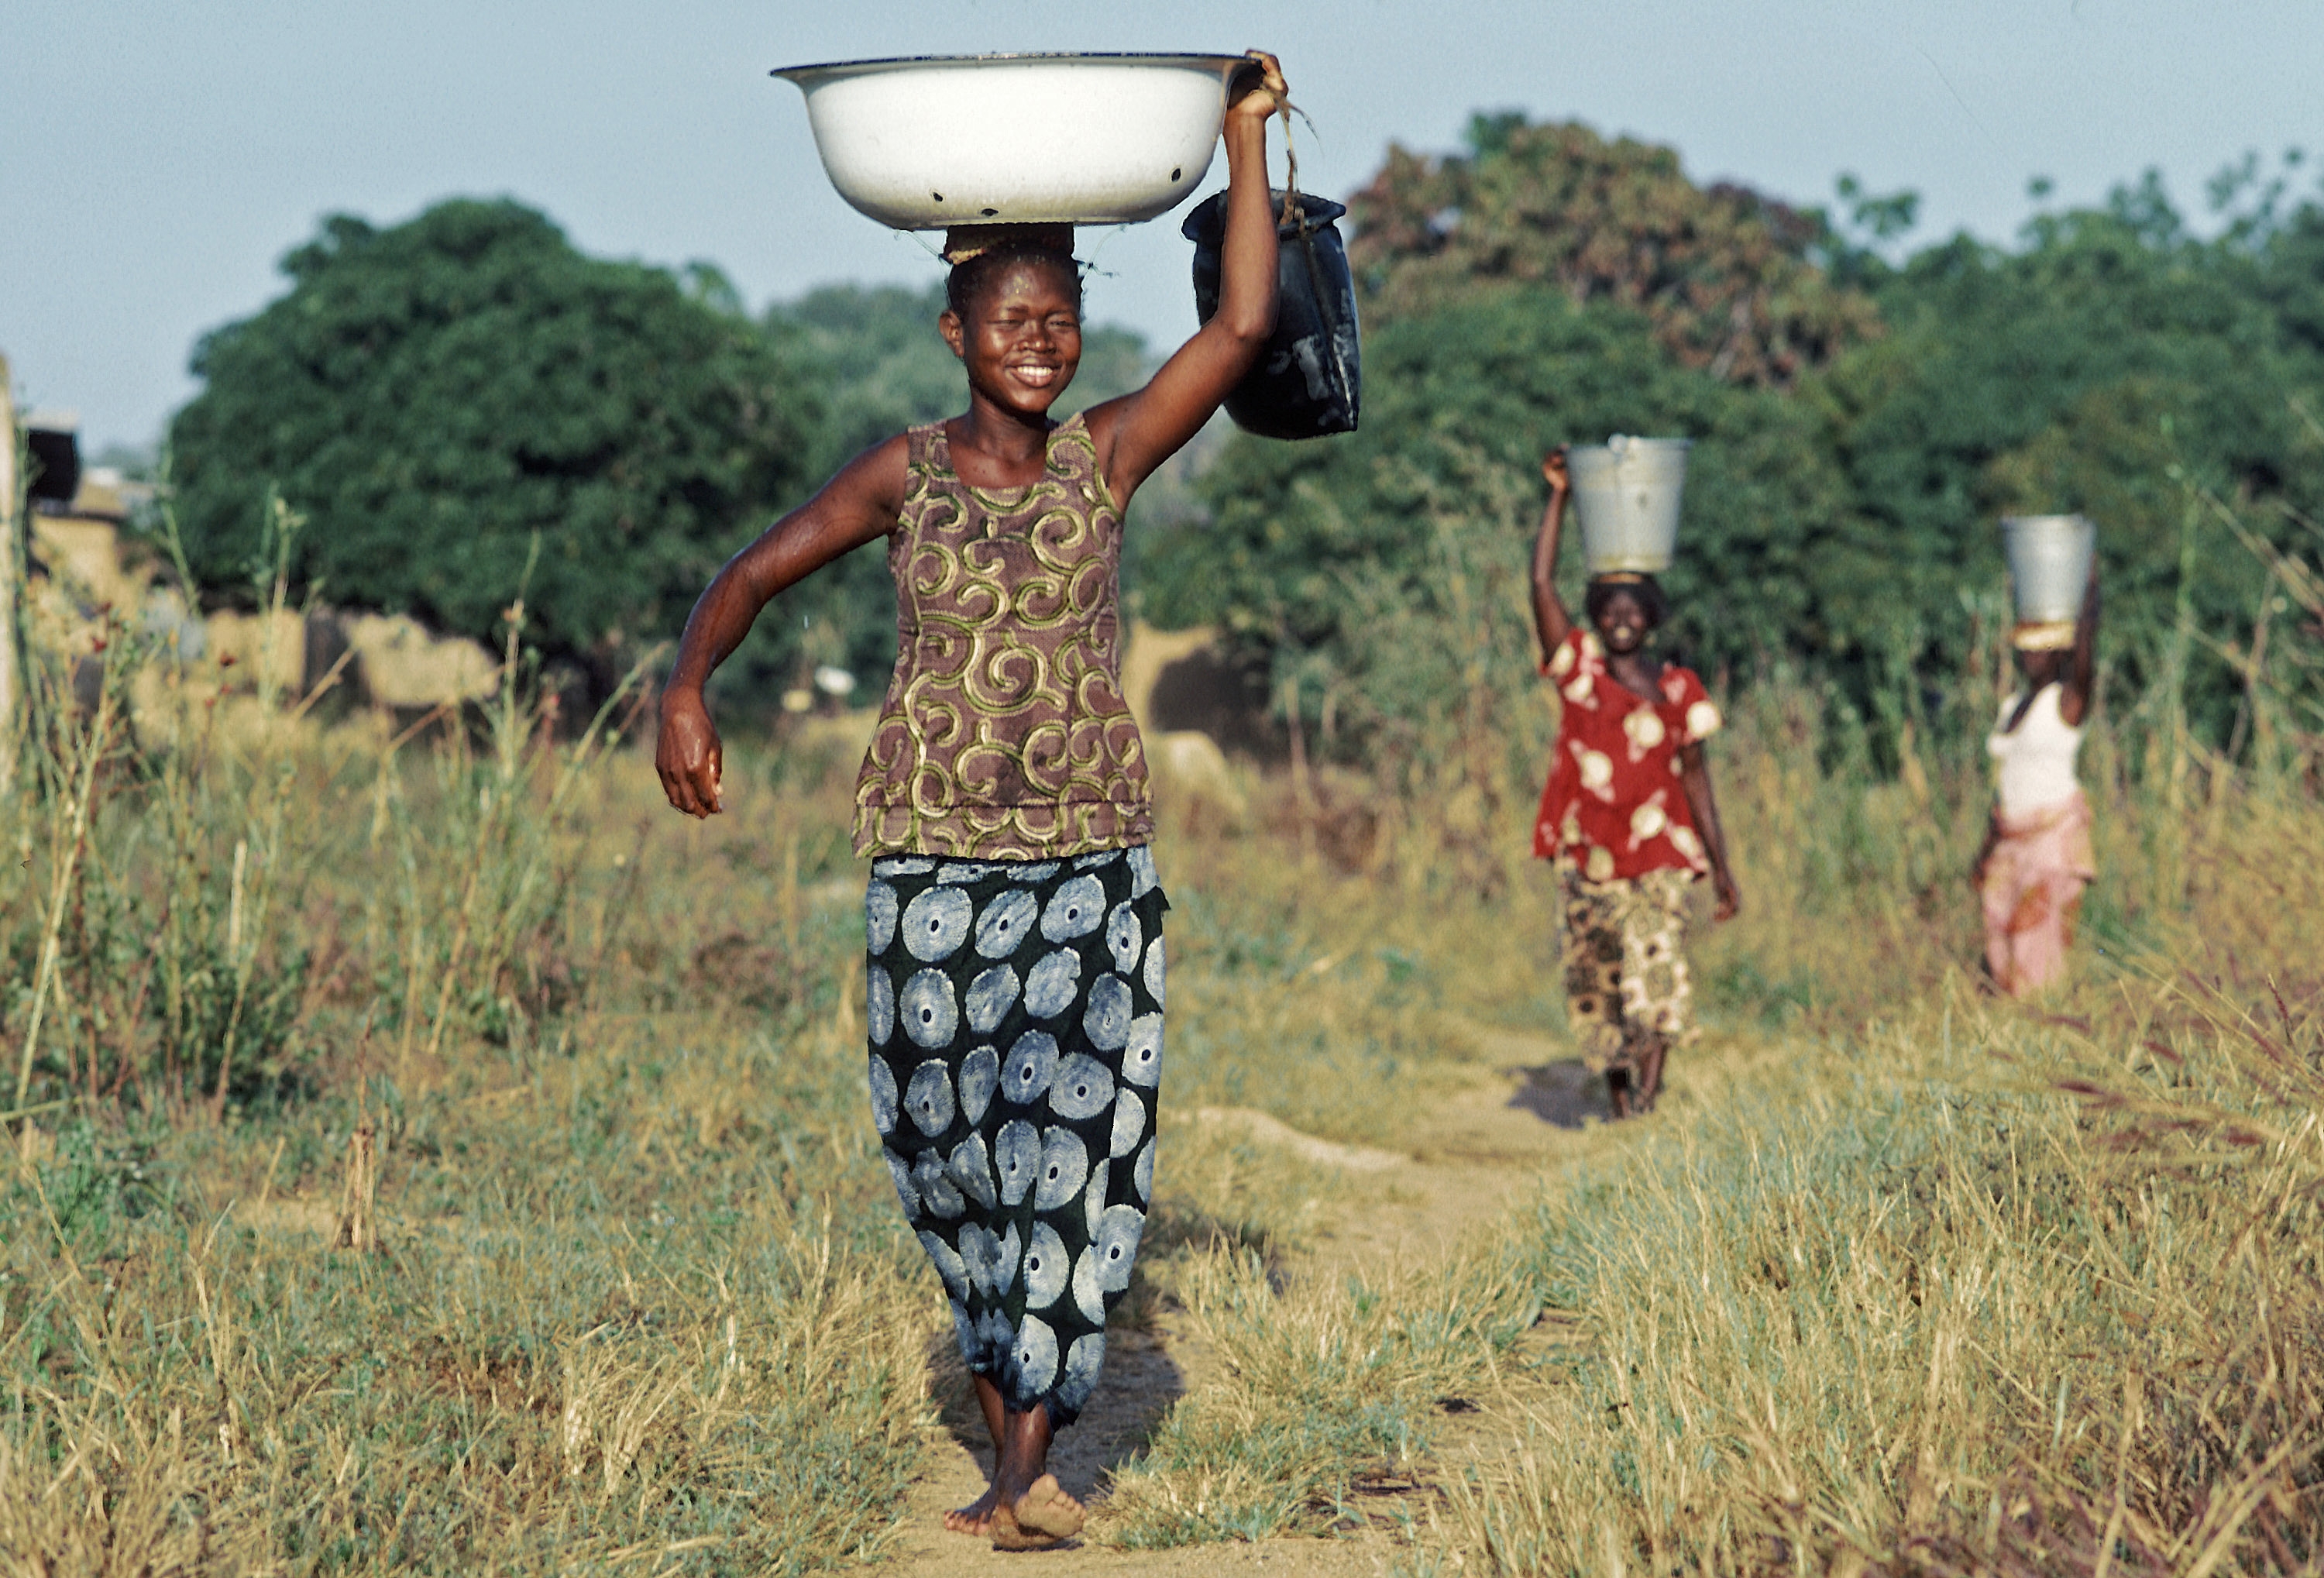 Hele 771 millioner mennesker mangler også tilgang til helt grunnleggende vannressurser. Halvparten av disse bor i Afrika sør for Sahara. Foto: UN Photo/Ray Witlin